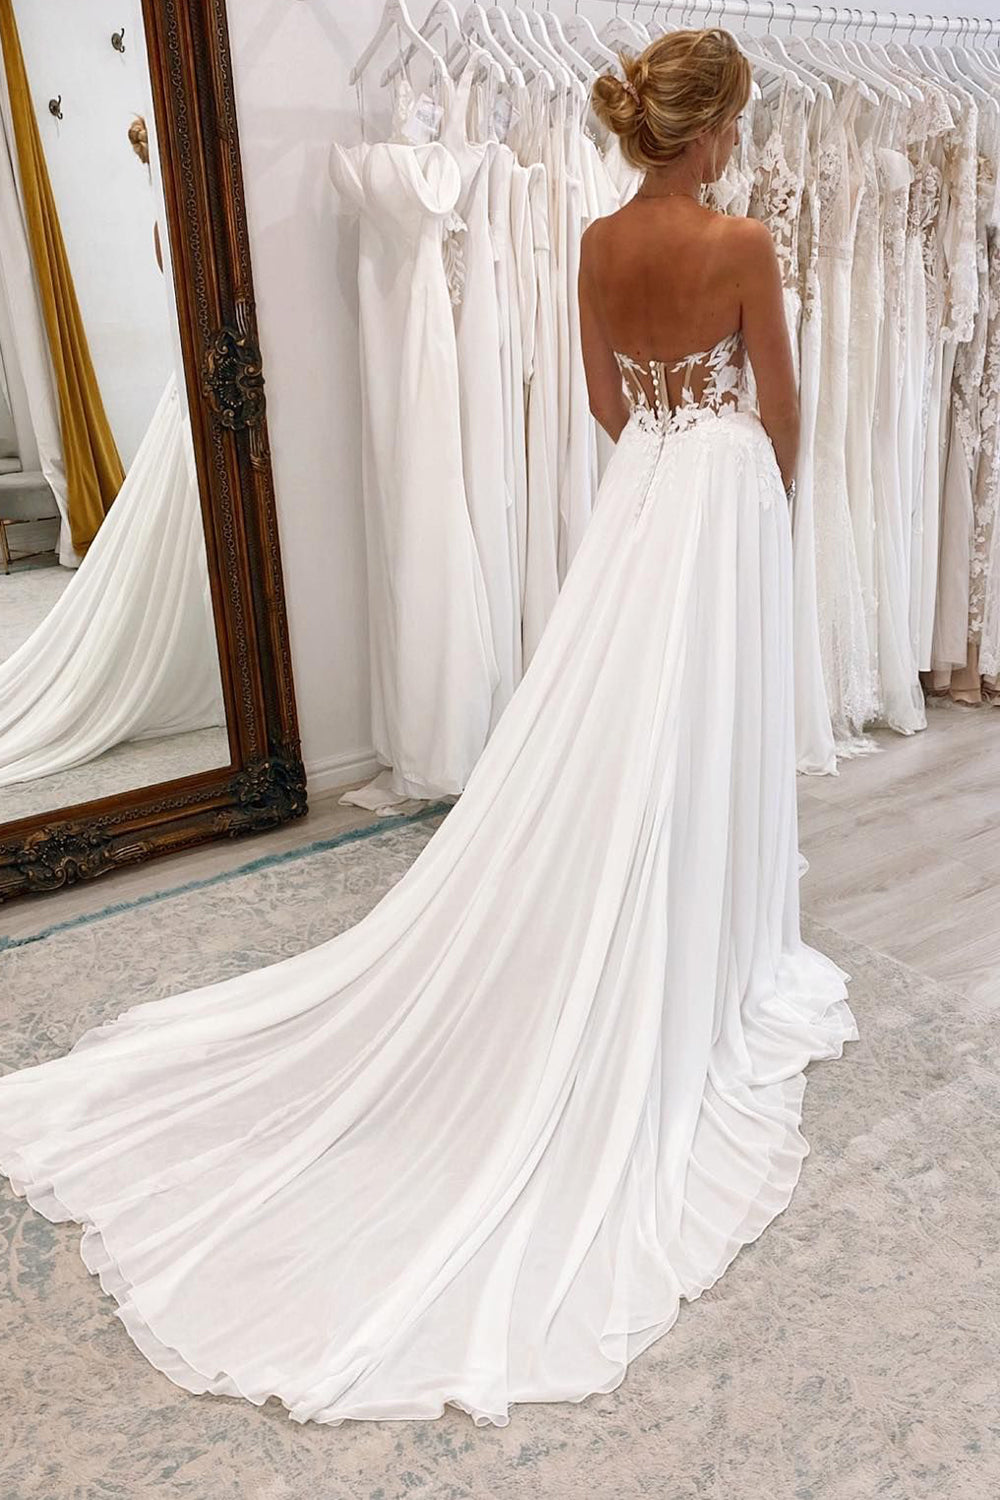 Hayley | White Sweetheart Long Lace Boho Wedding Dress with Slit